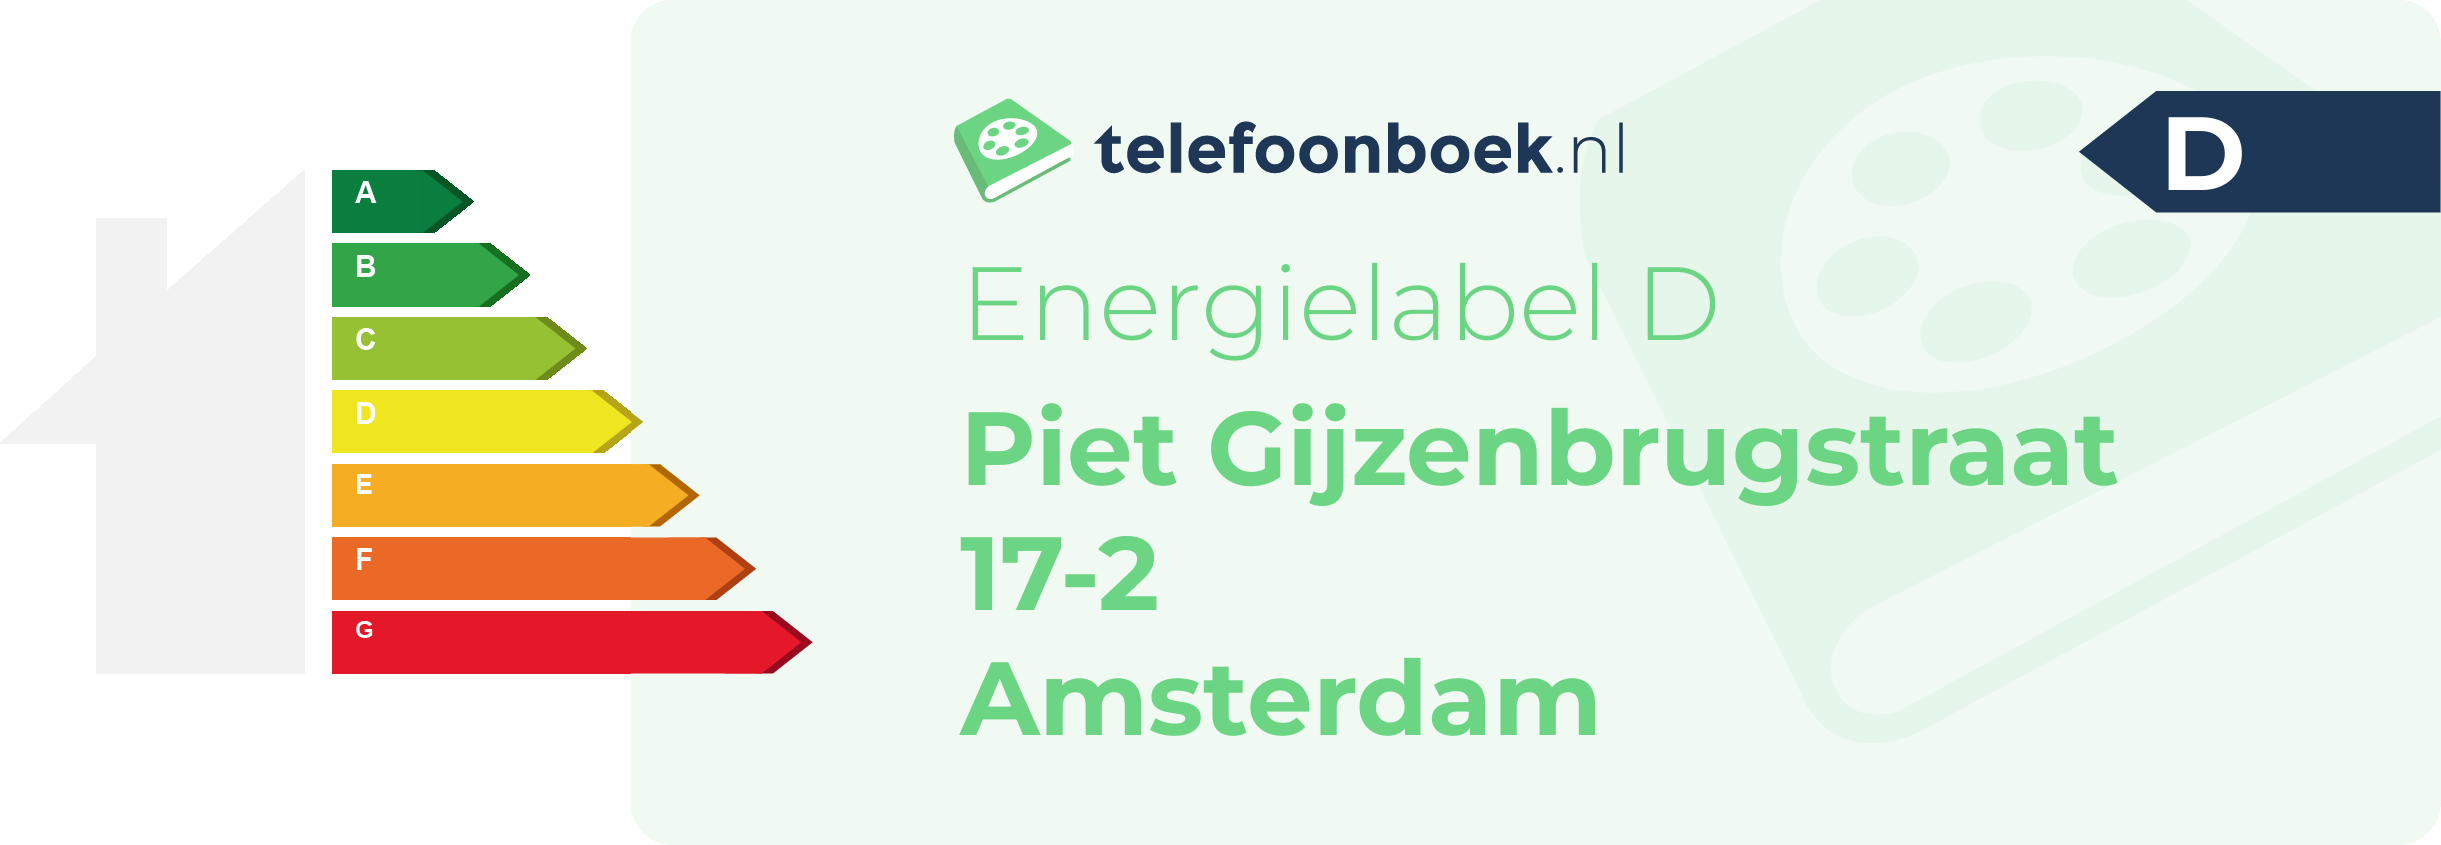 Energielabel Piet Gijzenbrugstraat 17-2 Amsterdam